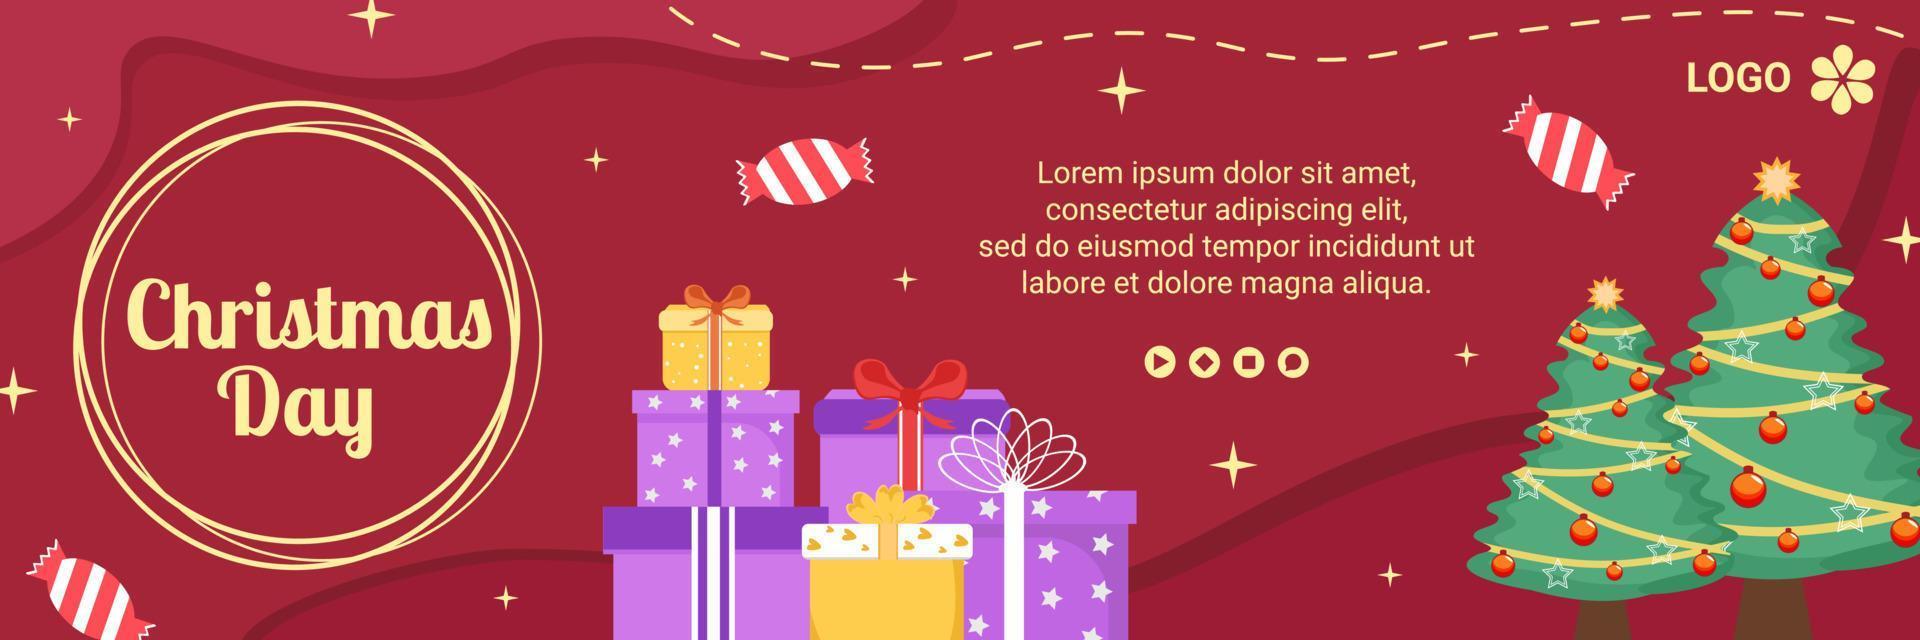 Ilustración de diseño plano de plantilla de portada de feliz día de Navidad editable de fondo cuadrado adecuado para redes sociales, tarjetas, saludos y anuncios web en Internet vector